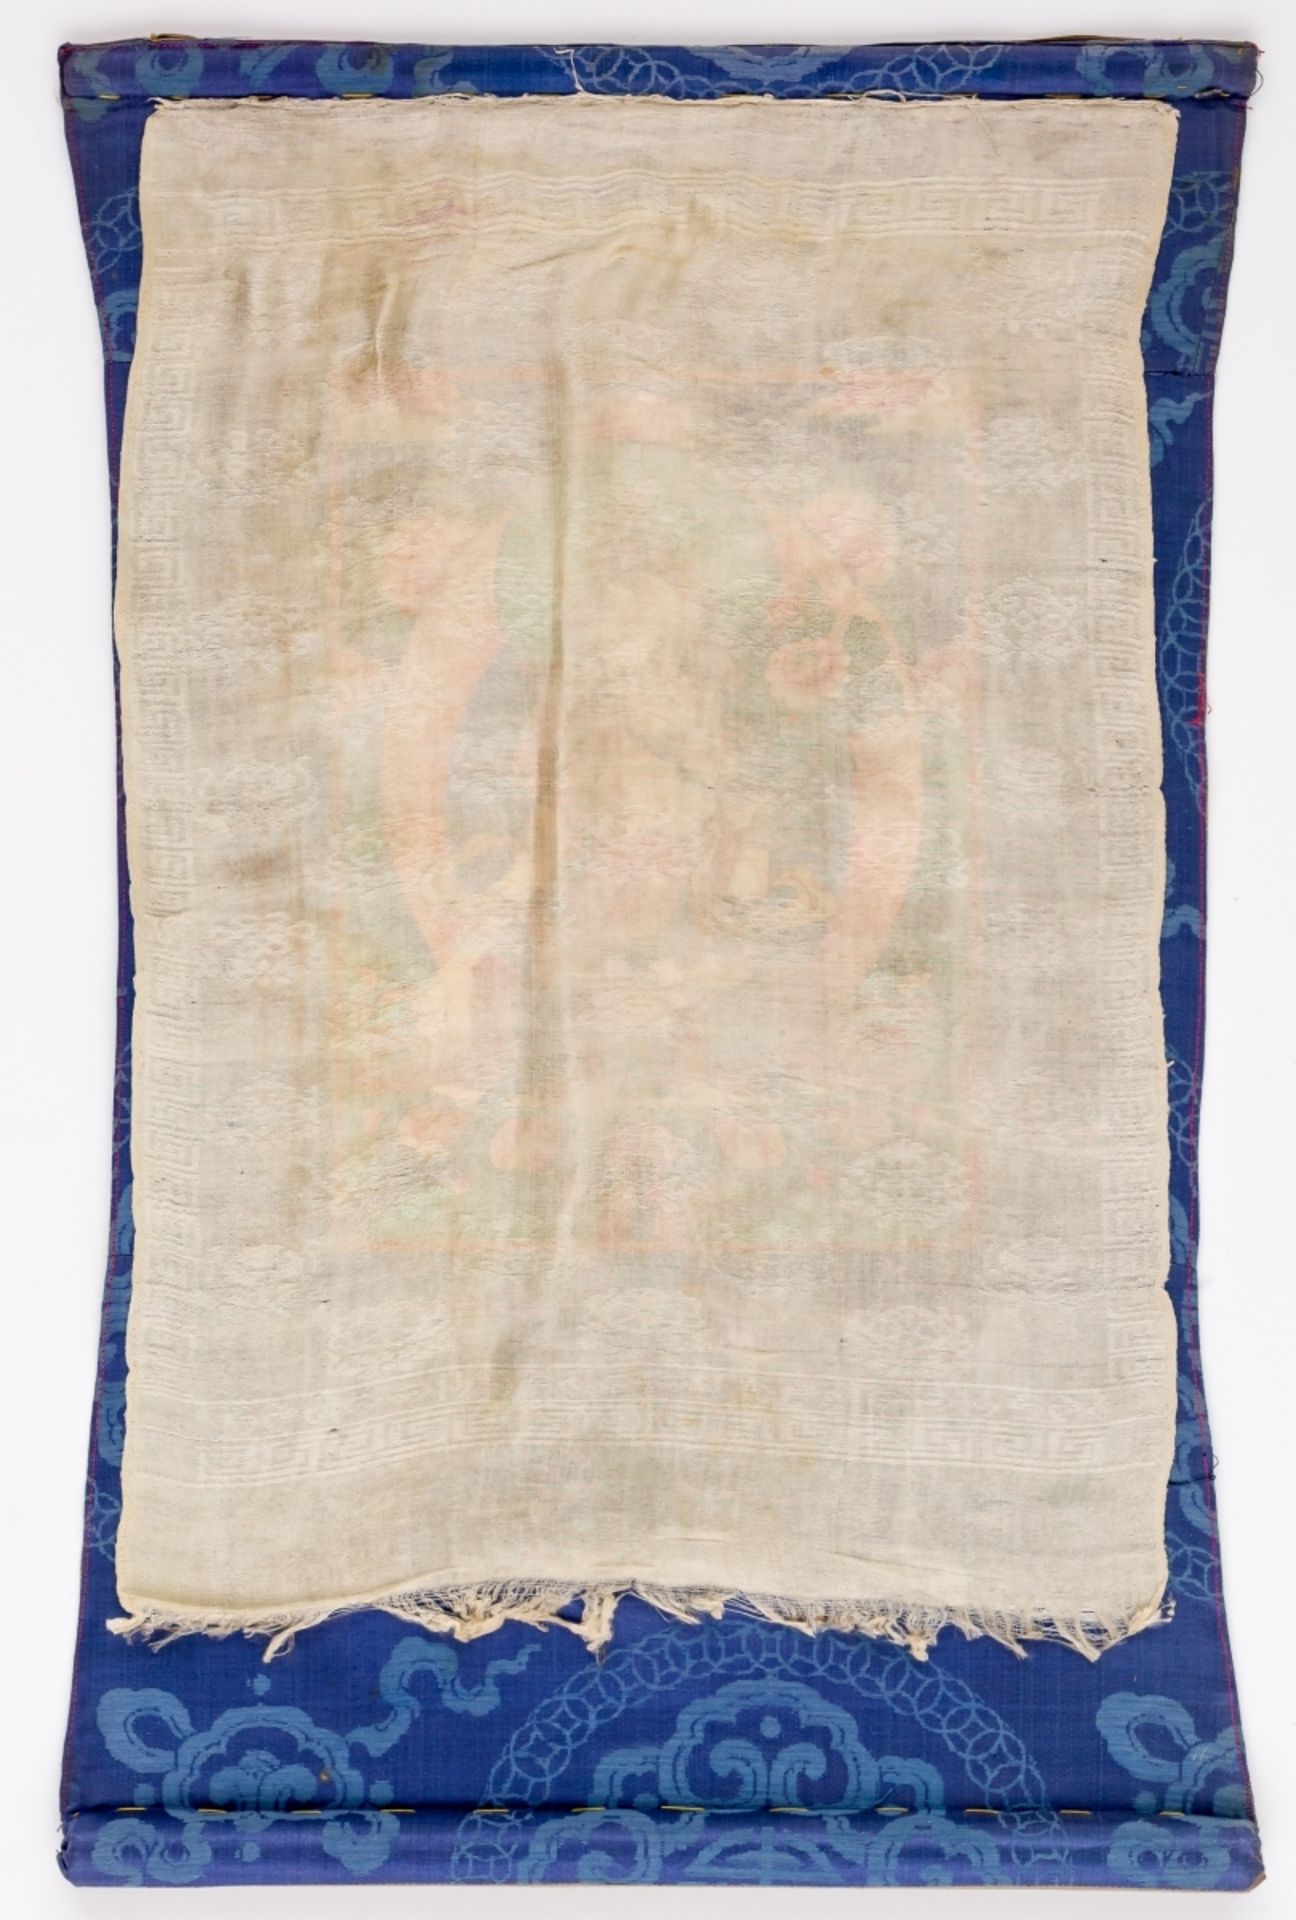 THANGKA MIT WEISSER TARAMongolei, wohl um 190063 x 41 cm, Bild: 30 x 22 cmProvenienz: Privatsammlung - Bild 2 aus 3